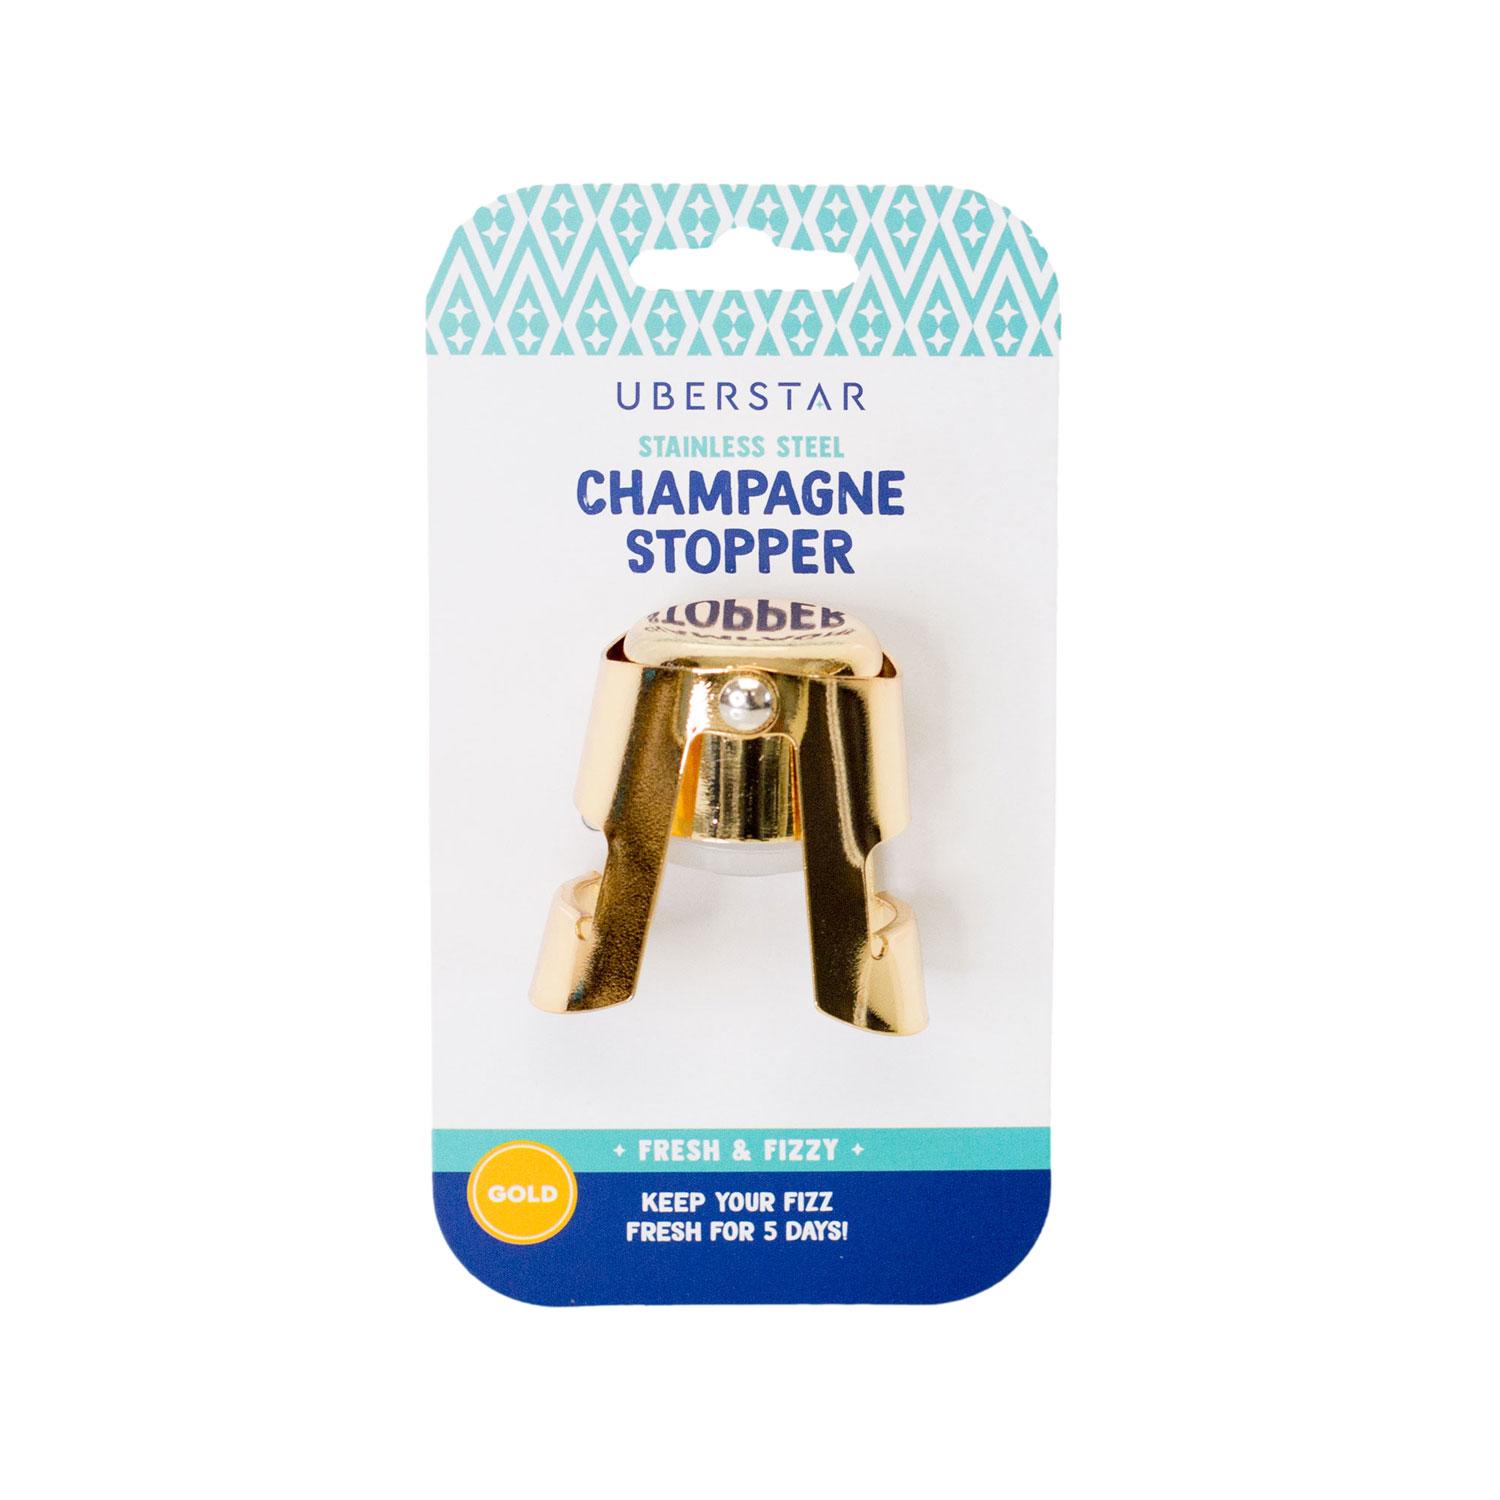 UBERSTAR Champagne Stopper - Gold